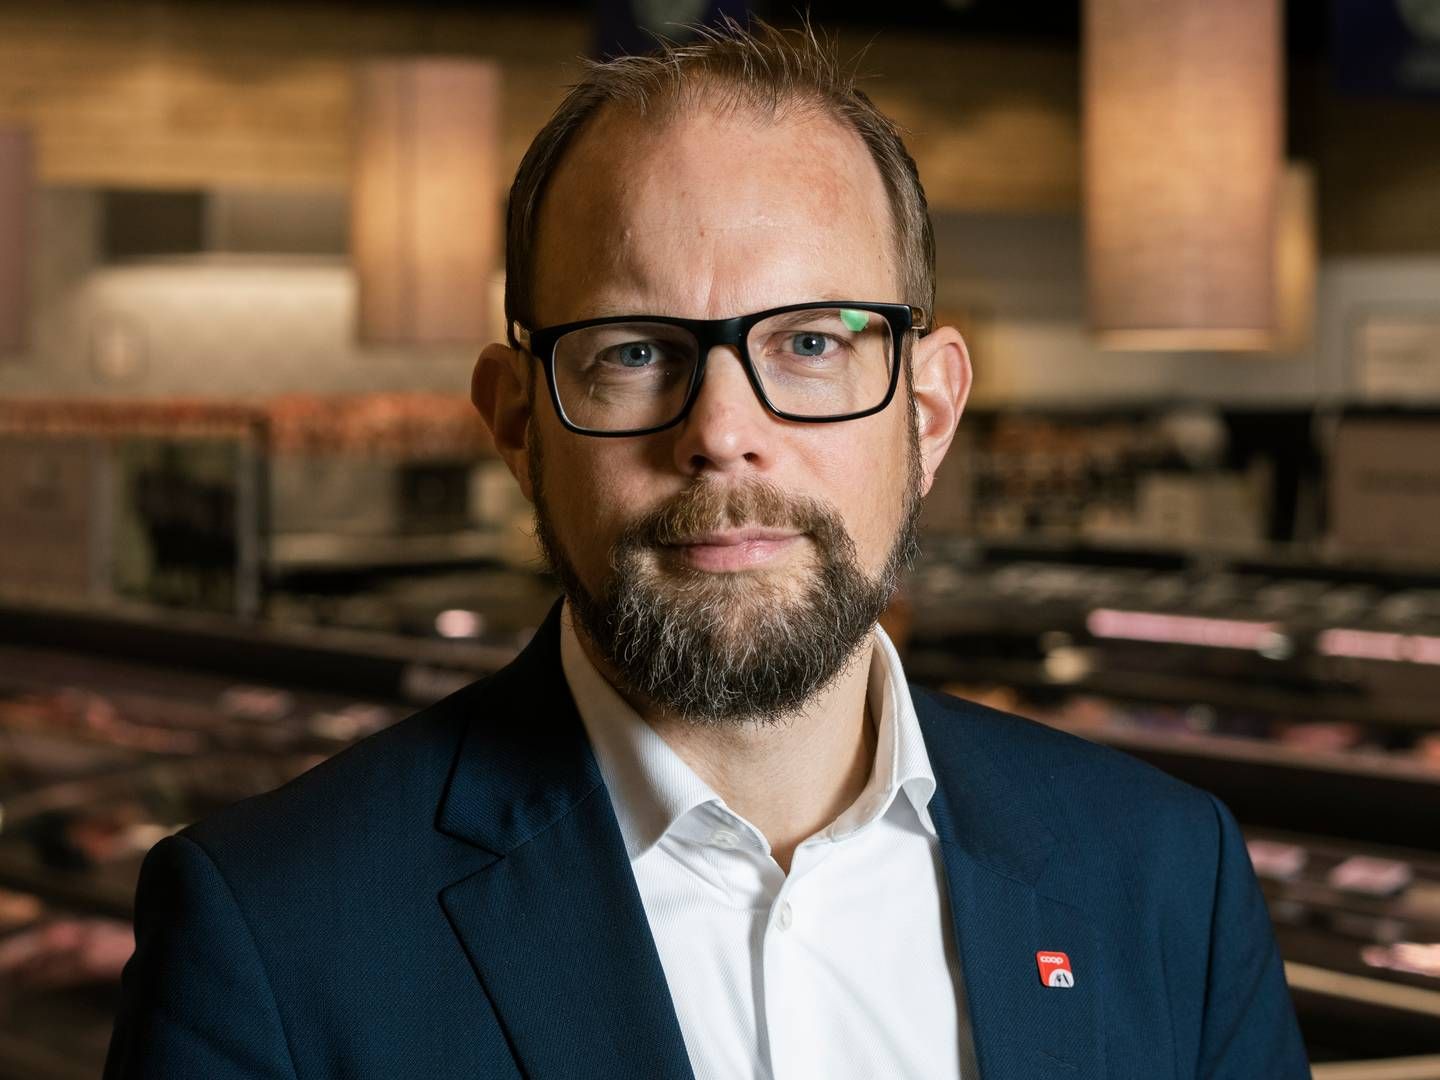 Coop-direktør Kræn Østergård Nielsen begrunder beslutningen med at skabe en mere enkel og fladere ledelsesstruktur. | Foto: Kim Frost